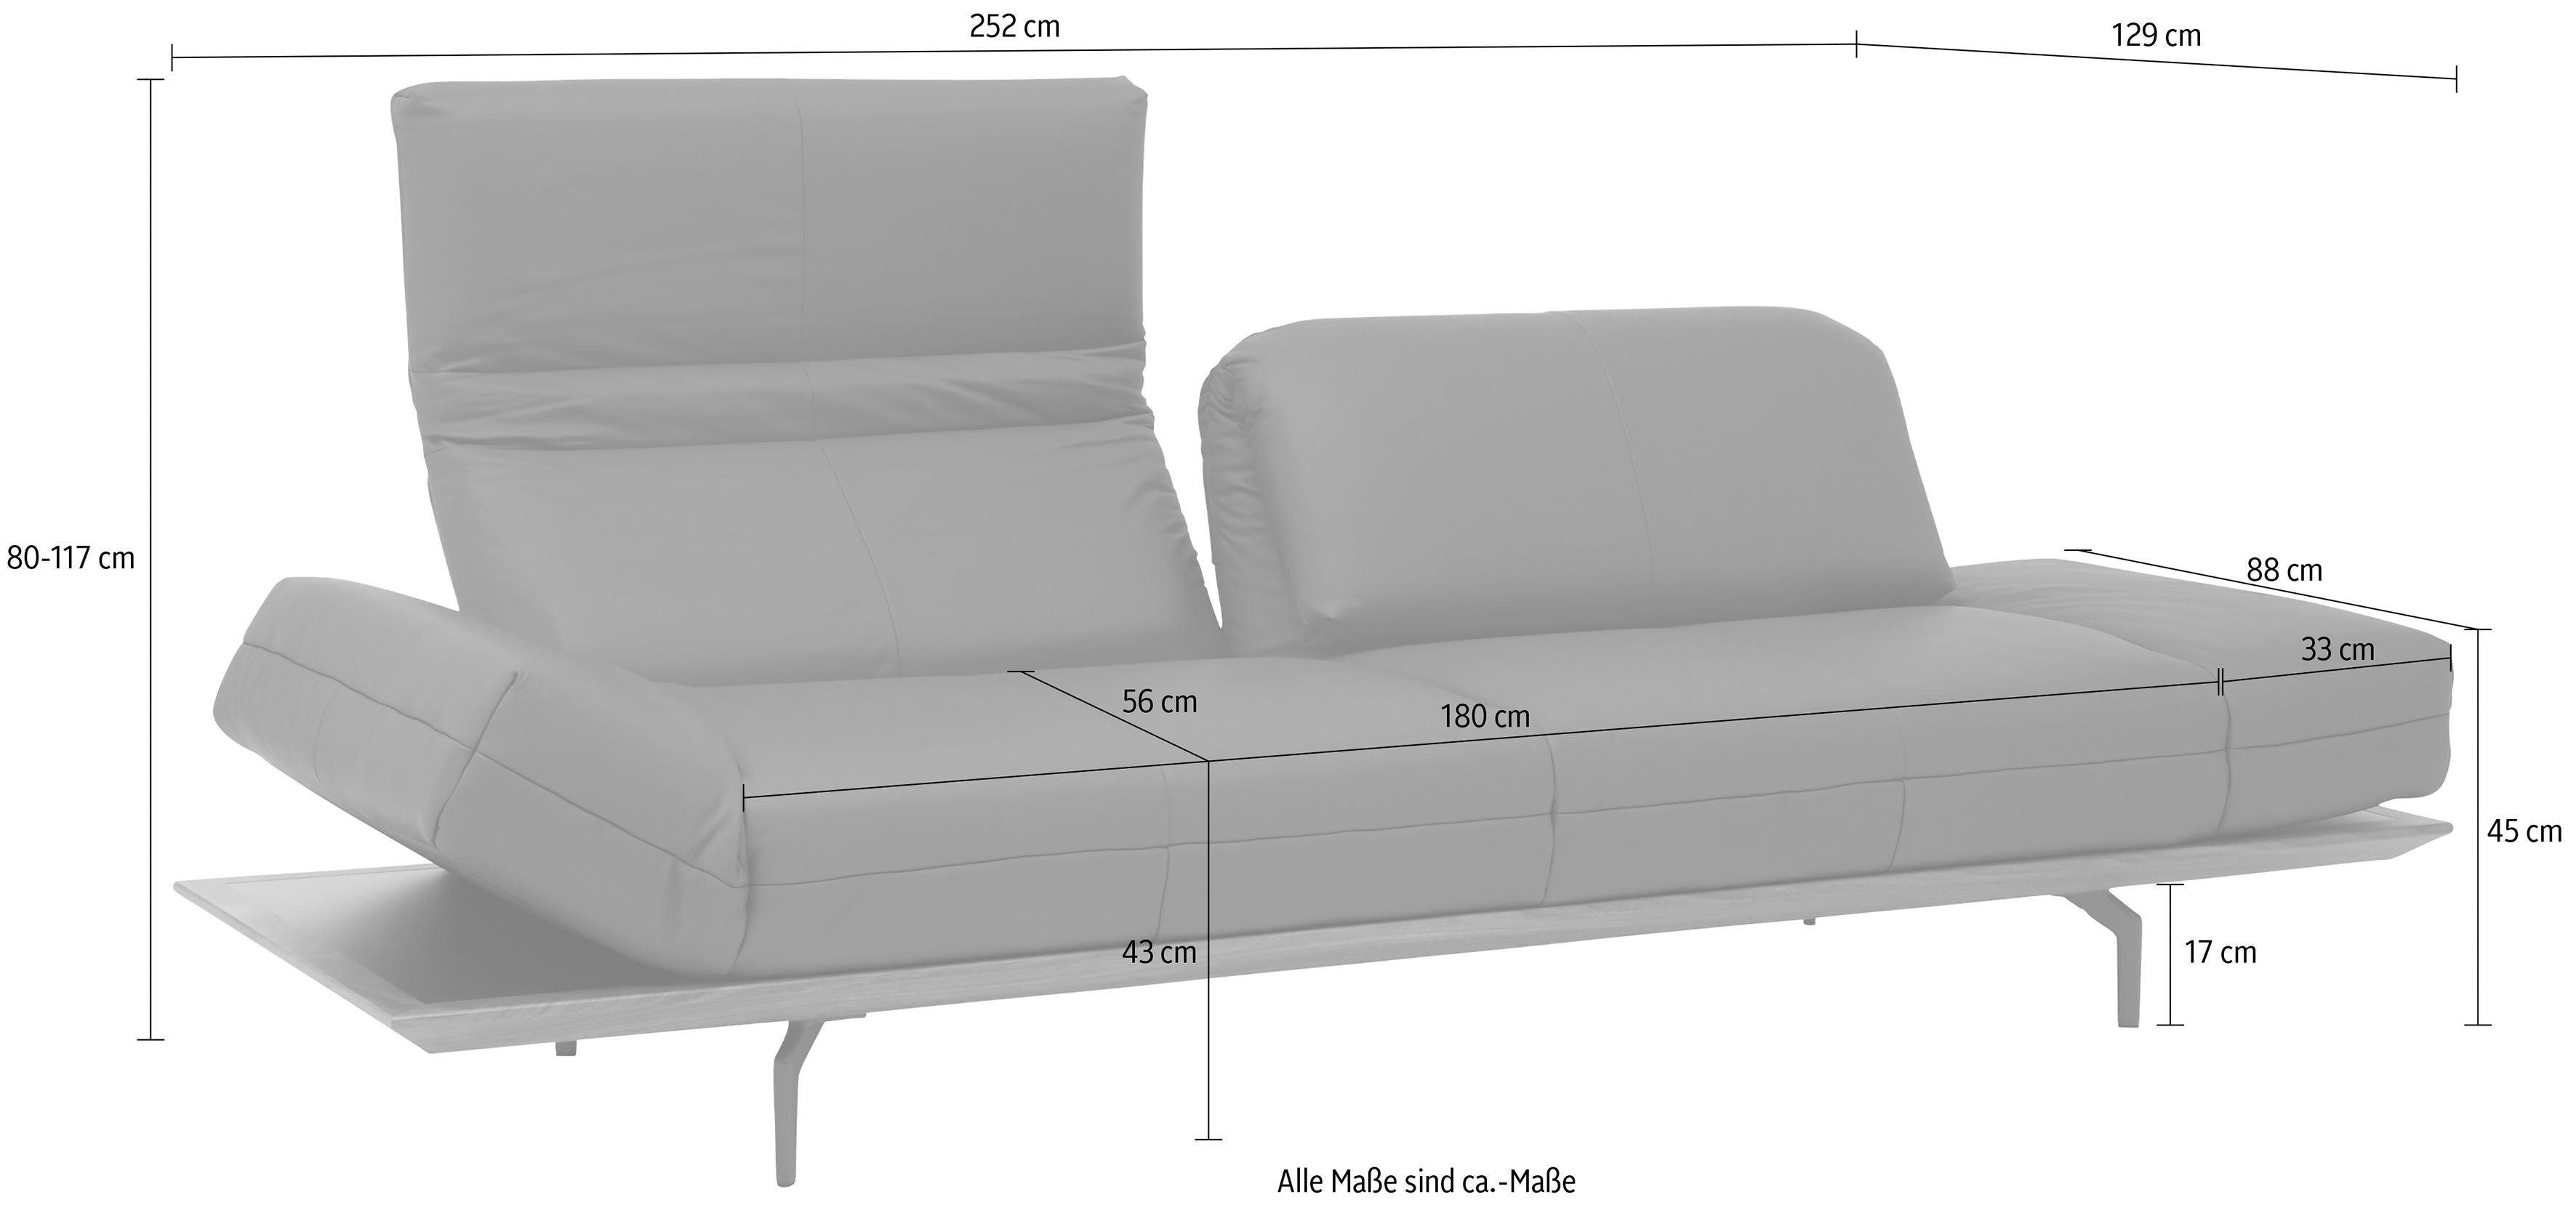 2 Qualitäten, sofa cm hs.420, Natur oder Holzrahmen in in 252 Nußbaum, Eiche 4-Sitzer hülsta Breite